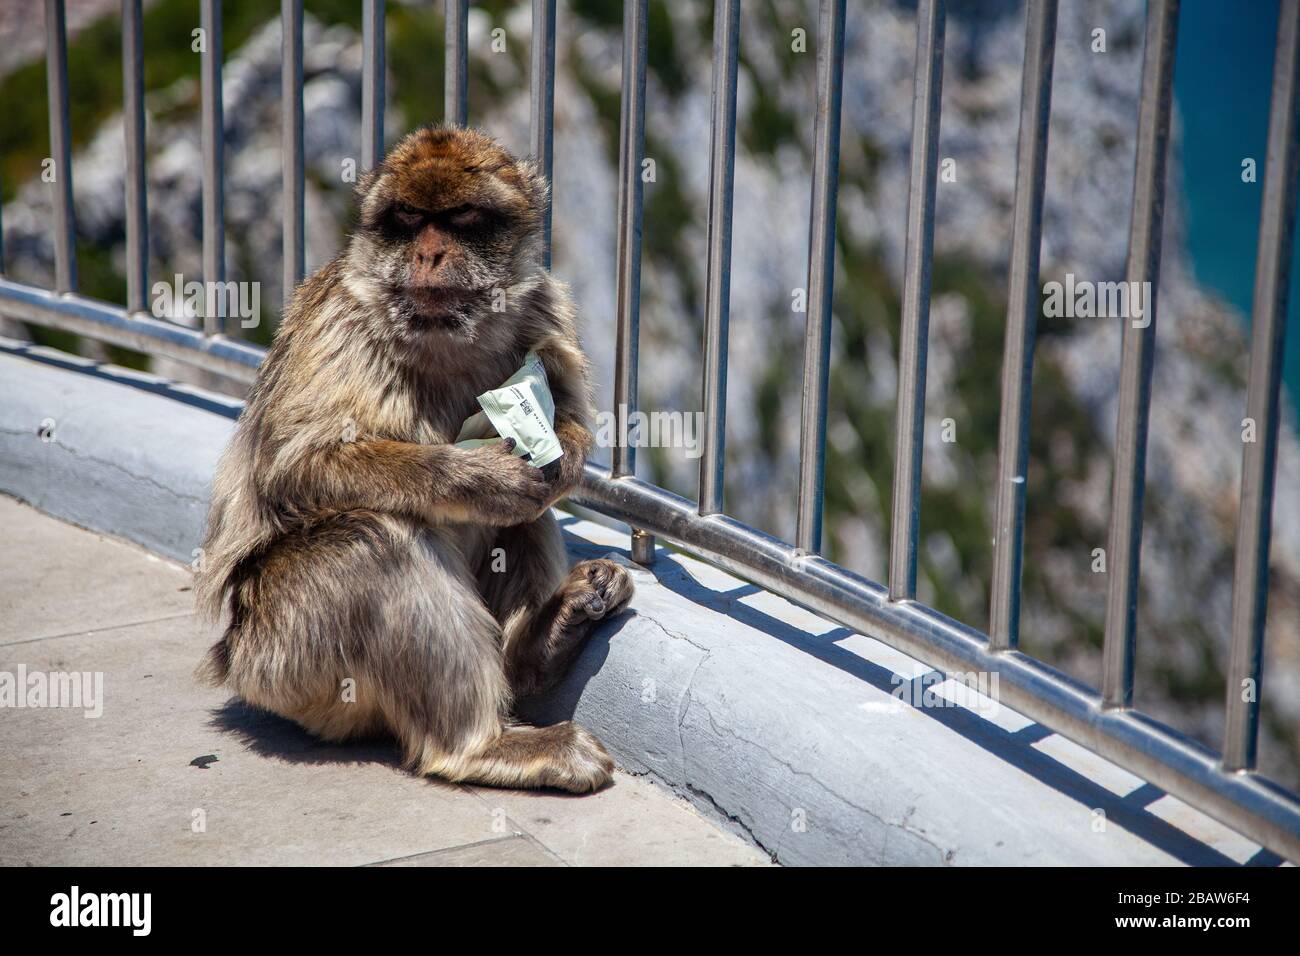 Un mono bárbaro (Macaca sylvanus) en la cima de la Roca, Gibraltar Foto de stock